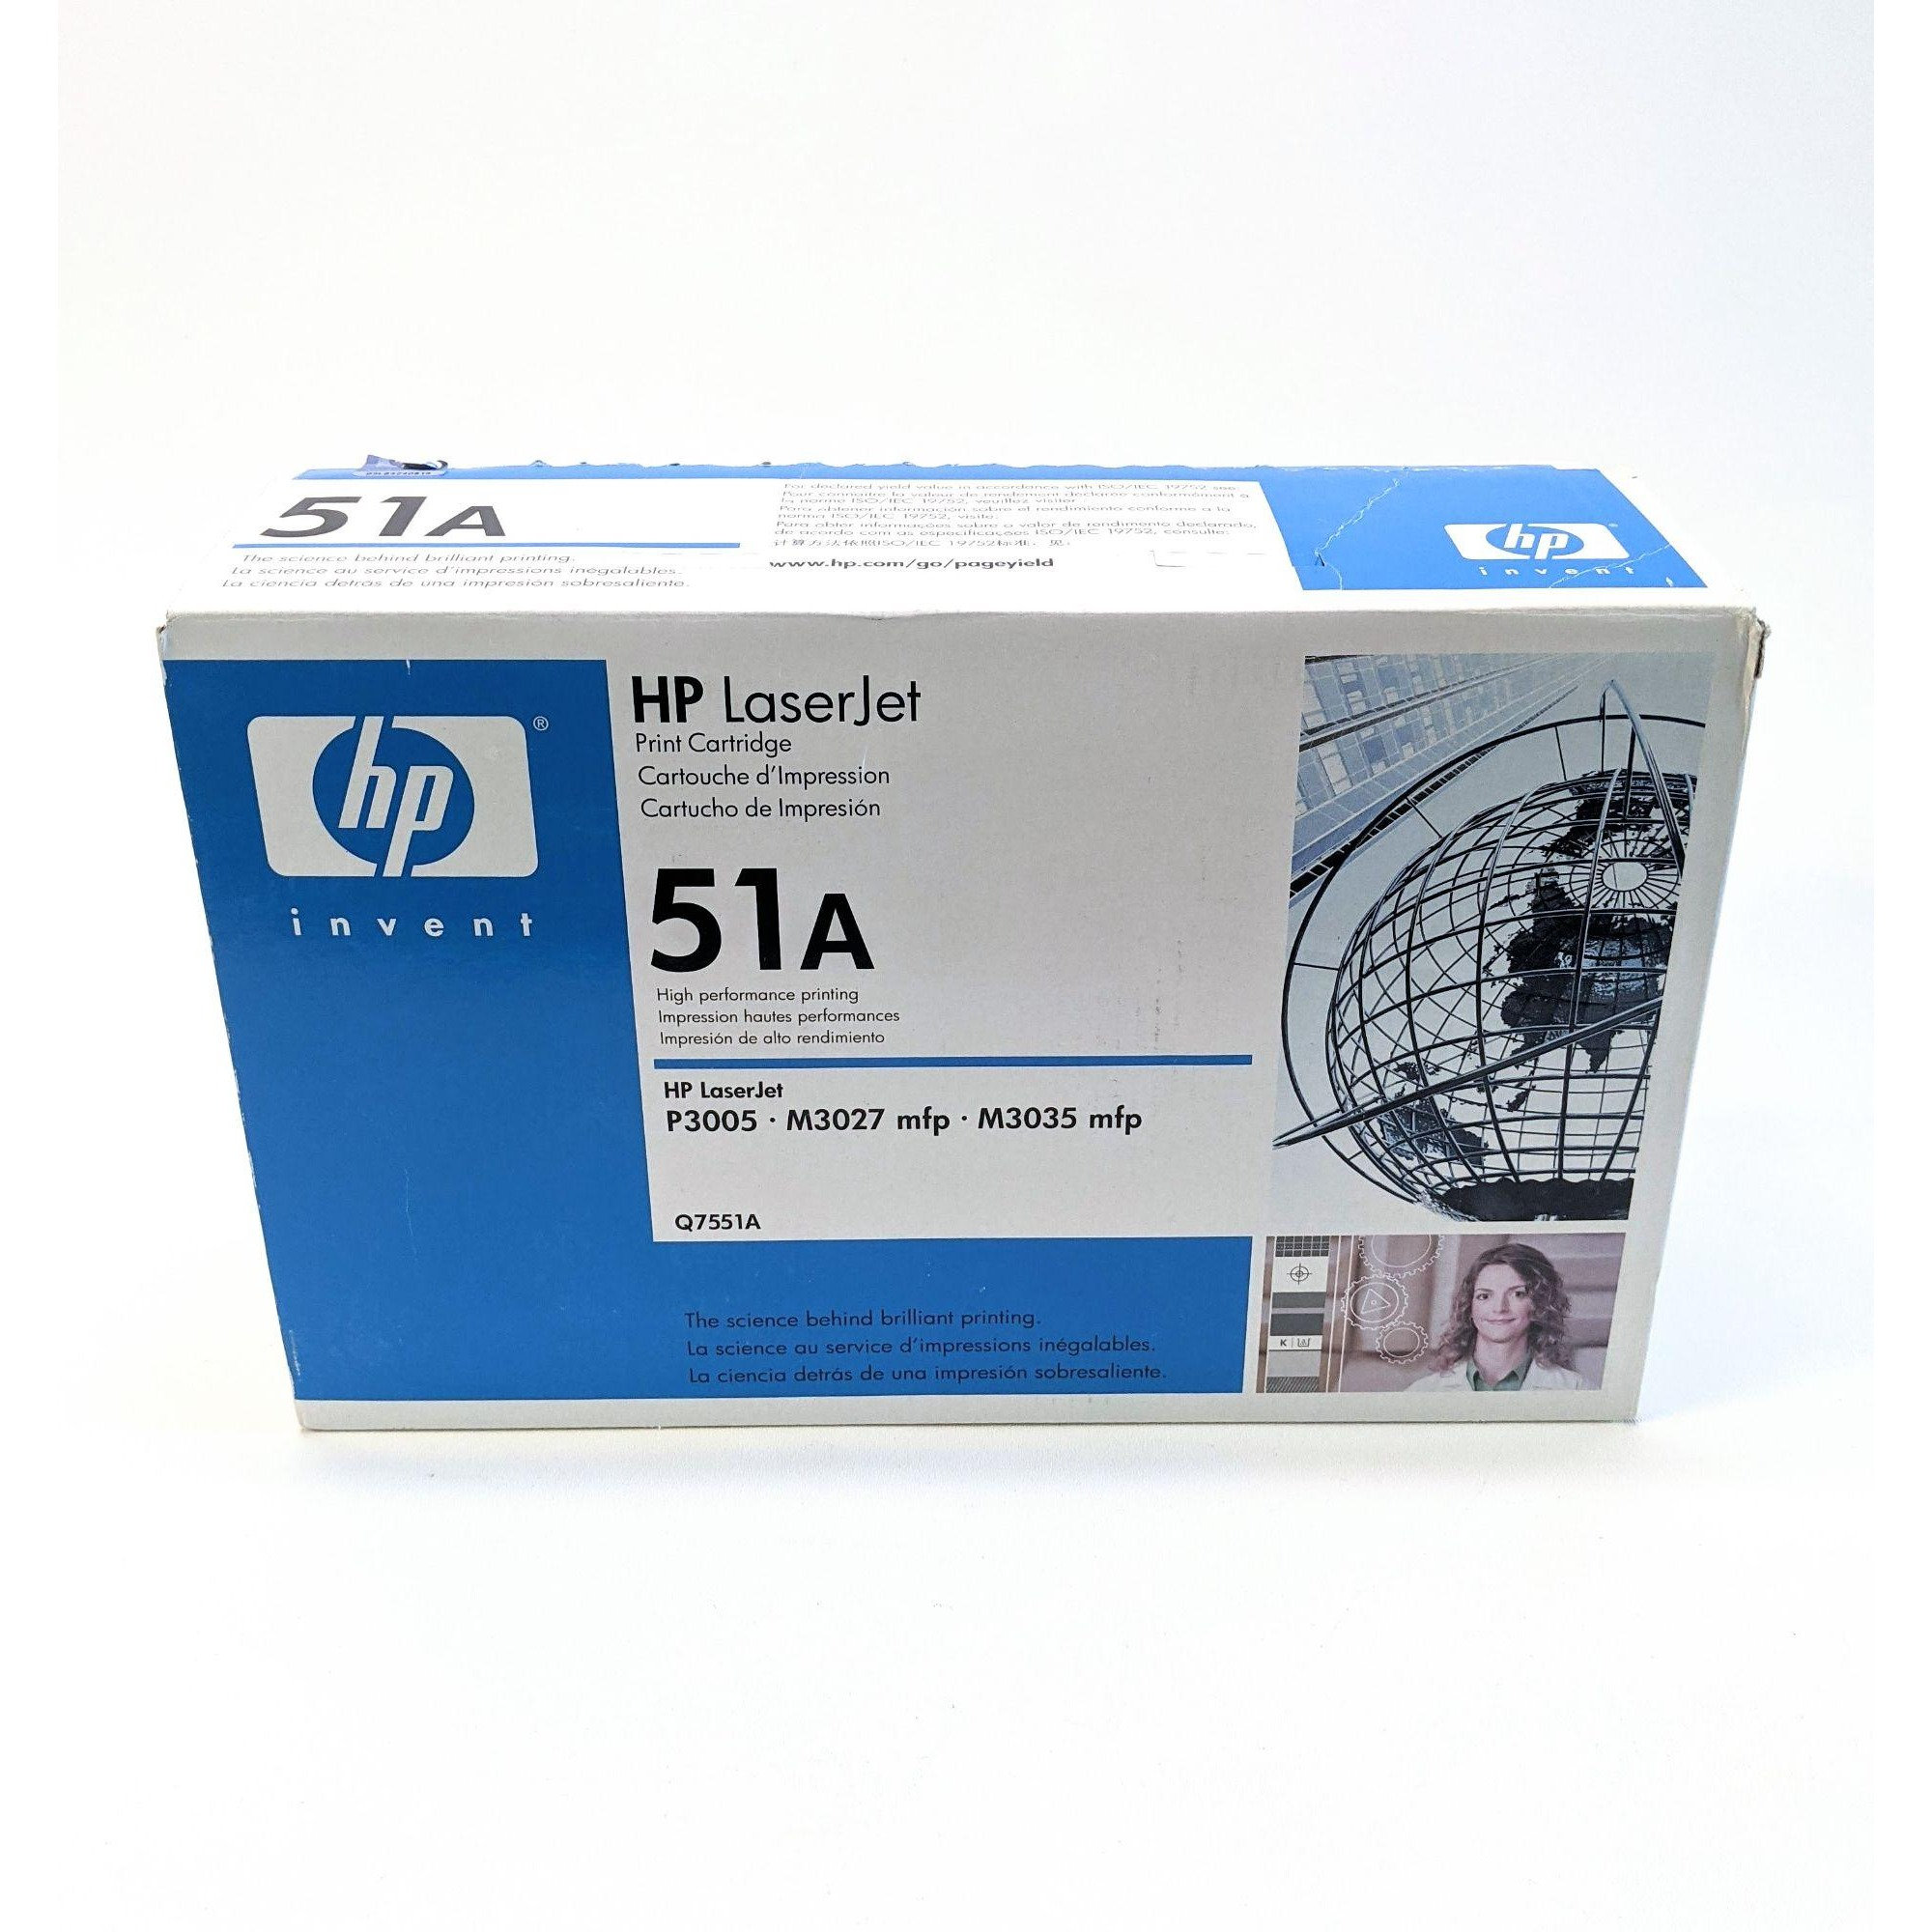 HP Q7551A 51A Toner Cartridge NEW GENUINE SEALED BOX 